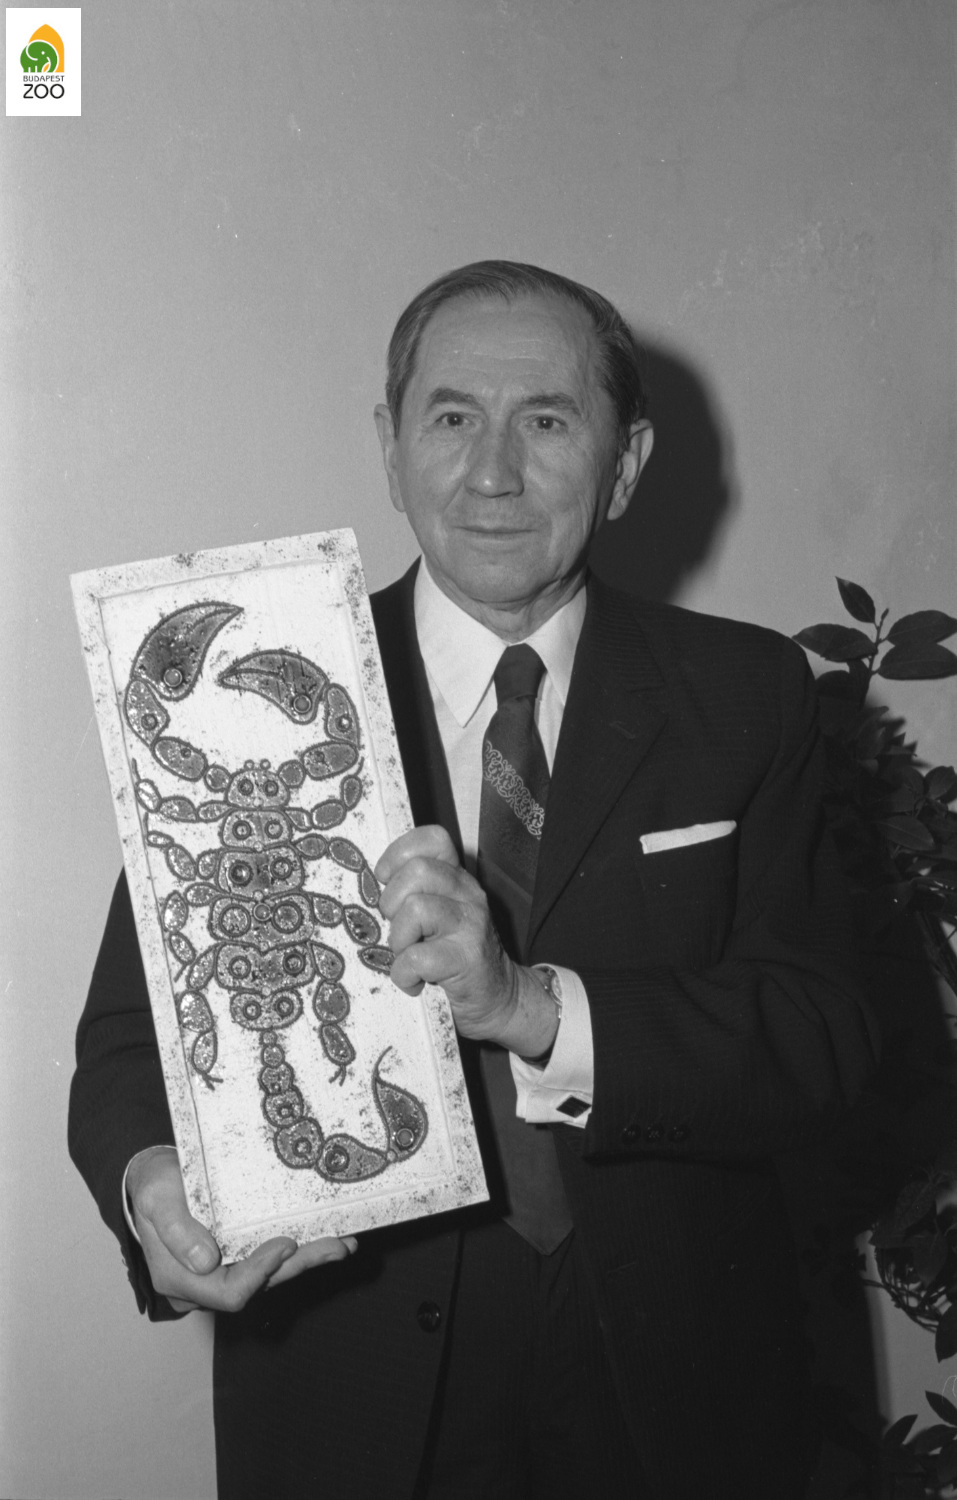 06 – Szalkay József főelőadó, az ízeltlábúak állatkerti bemutatásának fő kezdeményezője 1974. november 2-án, a Vivárium ünnepélyes megnyitóján 